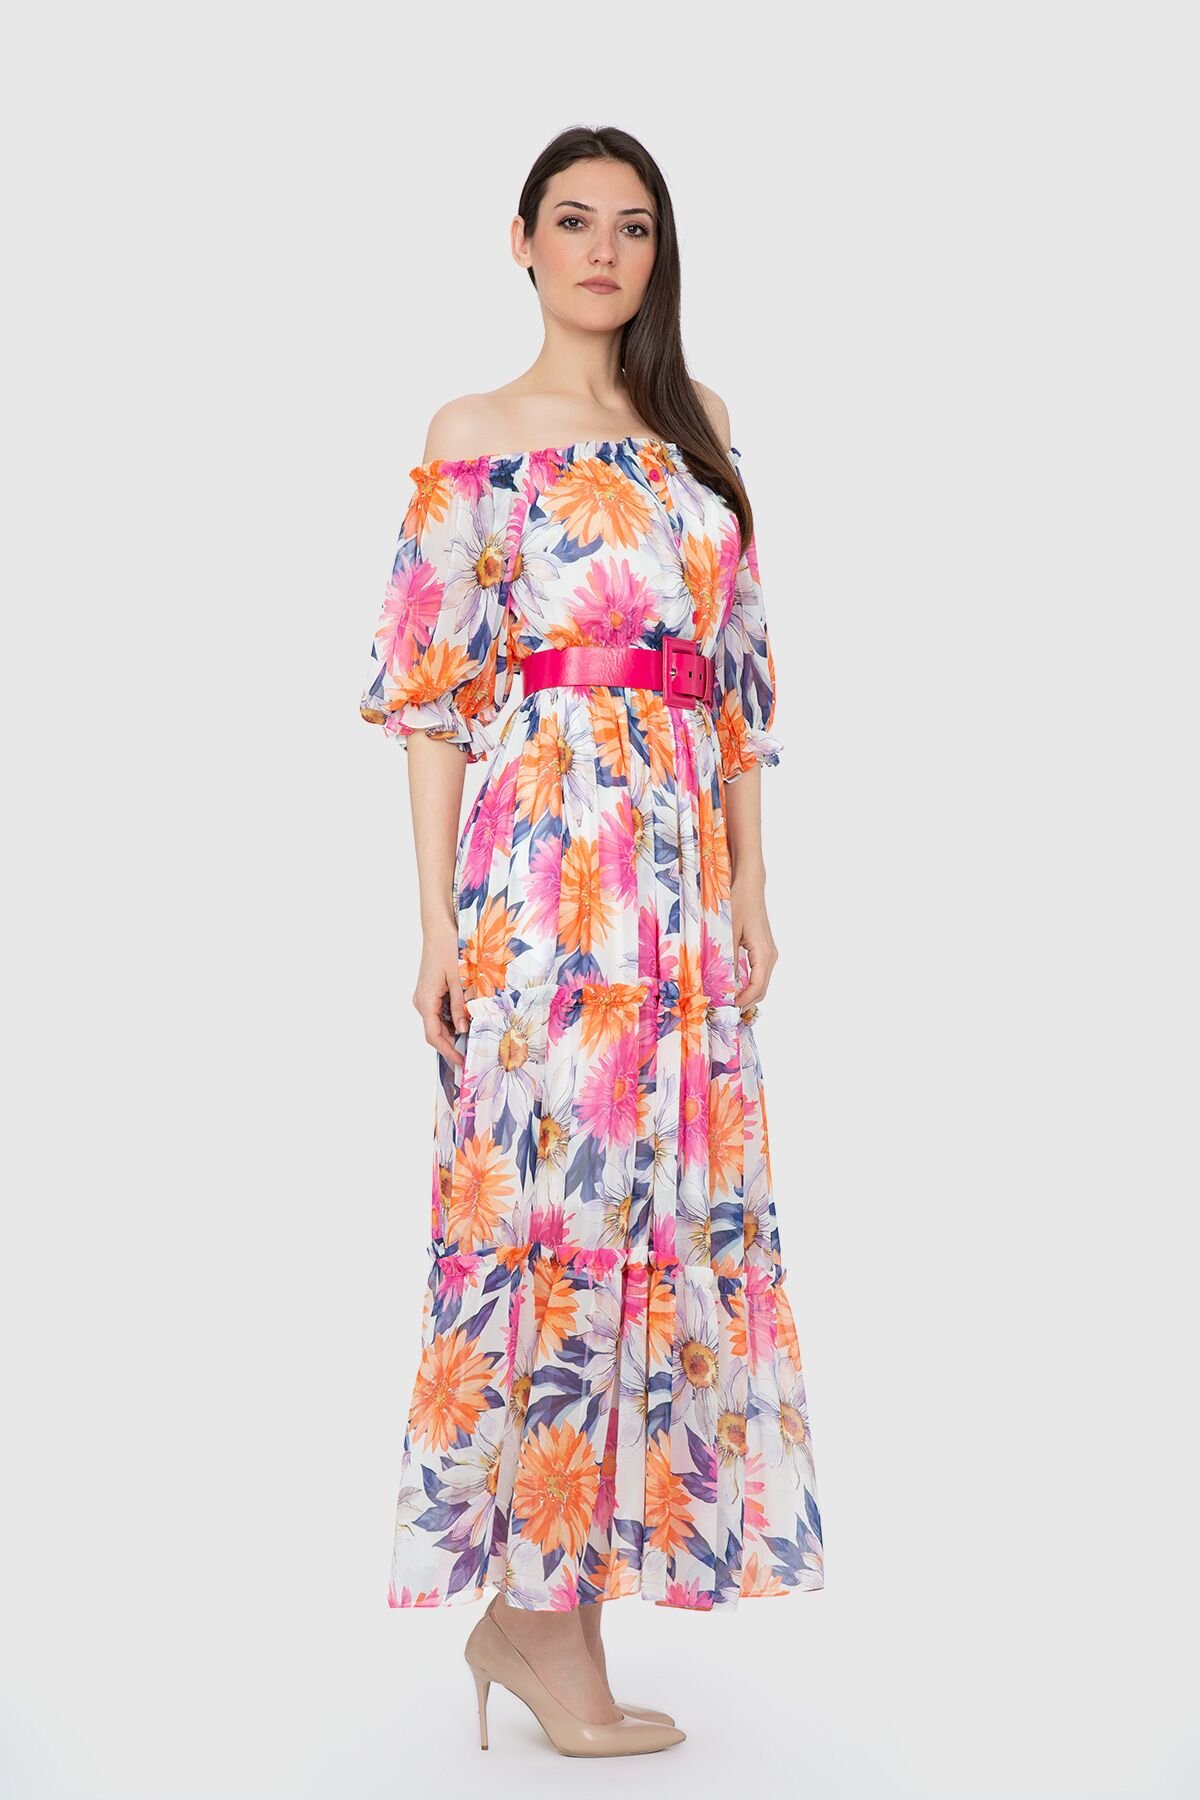  Floral Patterned Ecru Long Dress With Off Shoulder Belt